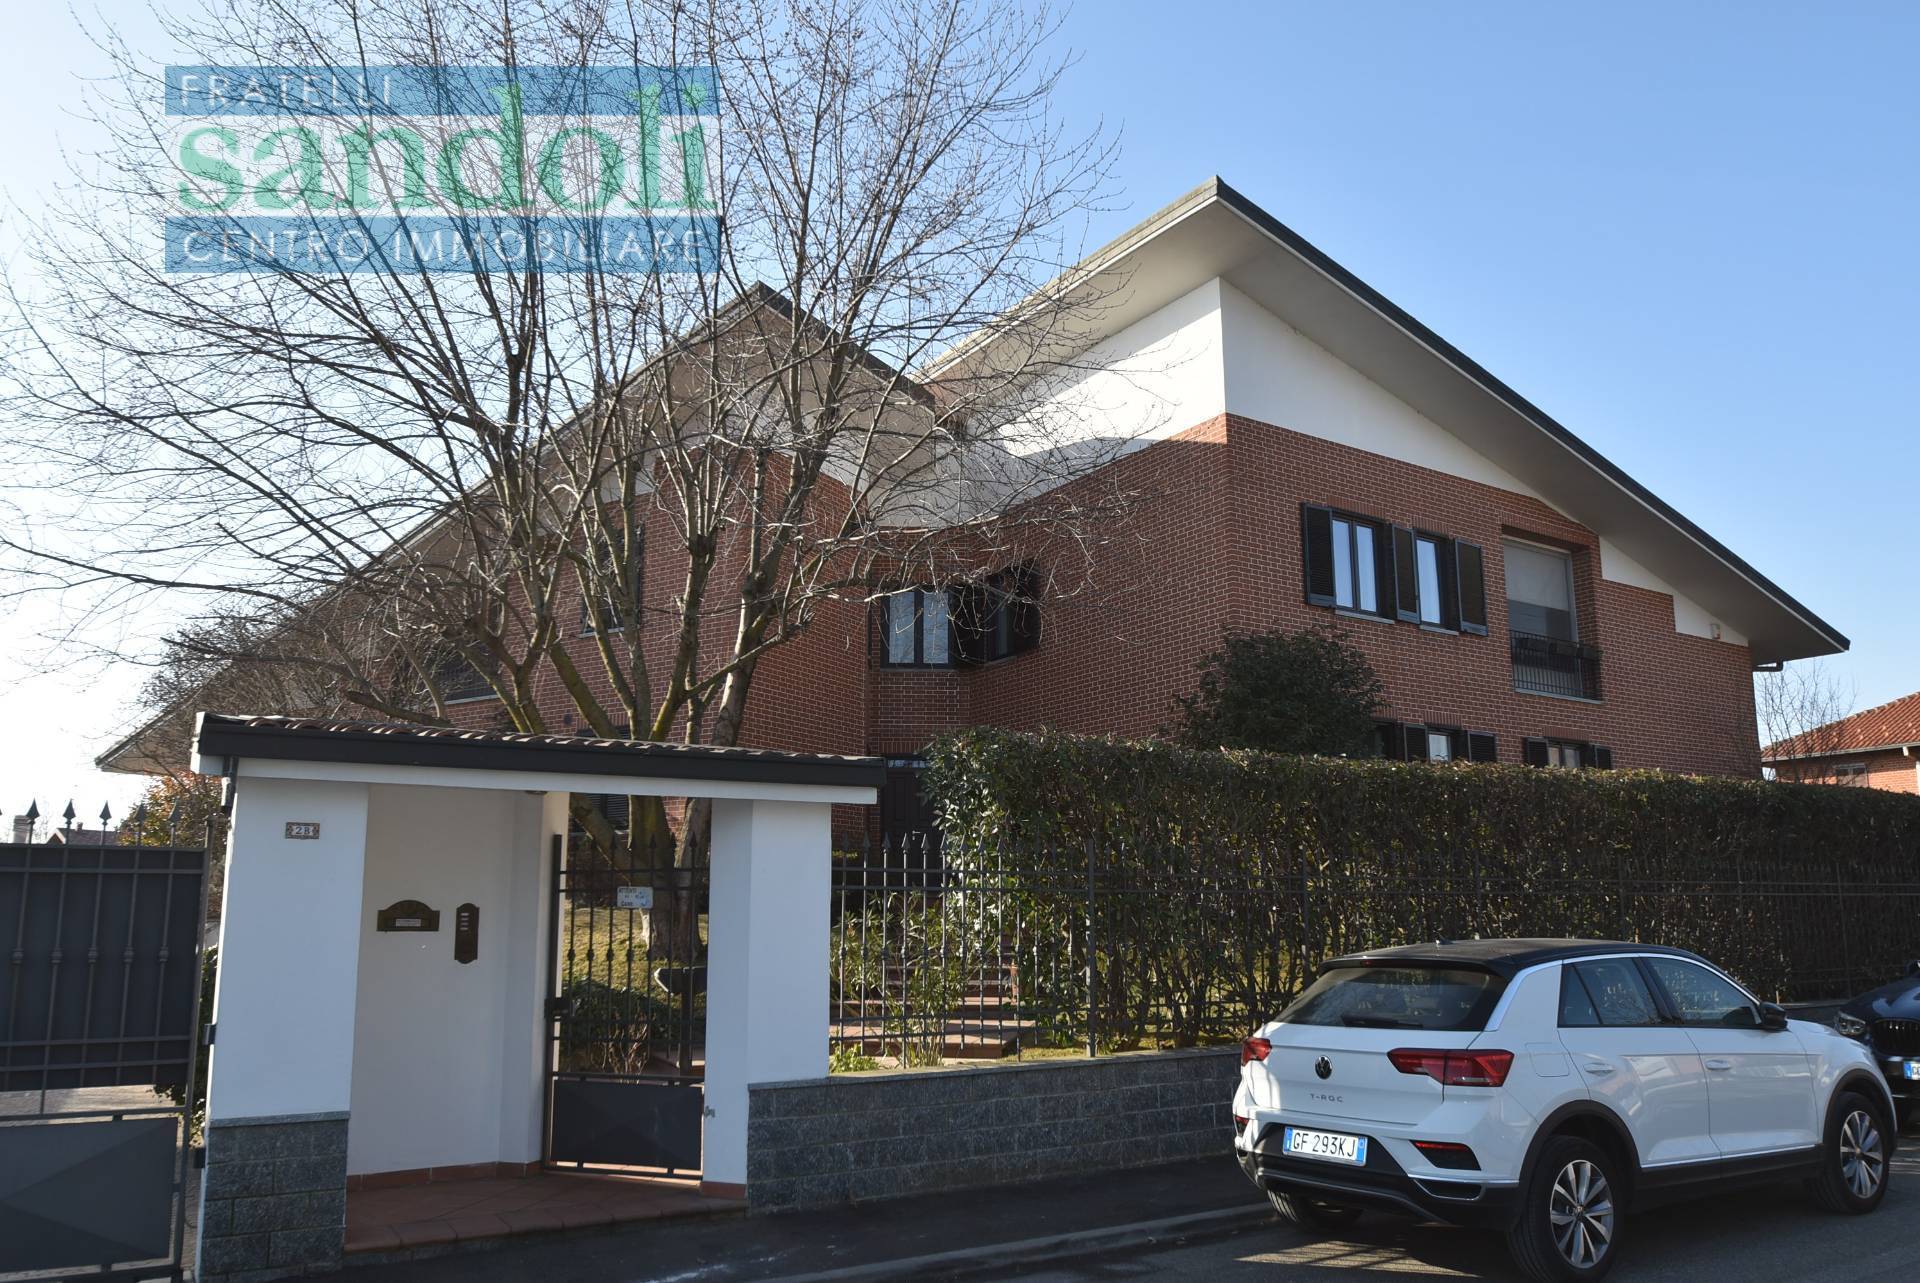 Appartamento in vendita a Caresanablot, 4 locali, zona Località: Paesi, prezzo € 265.000 | PortaleAgenzieImmobiliari.it